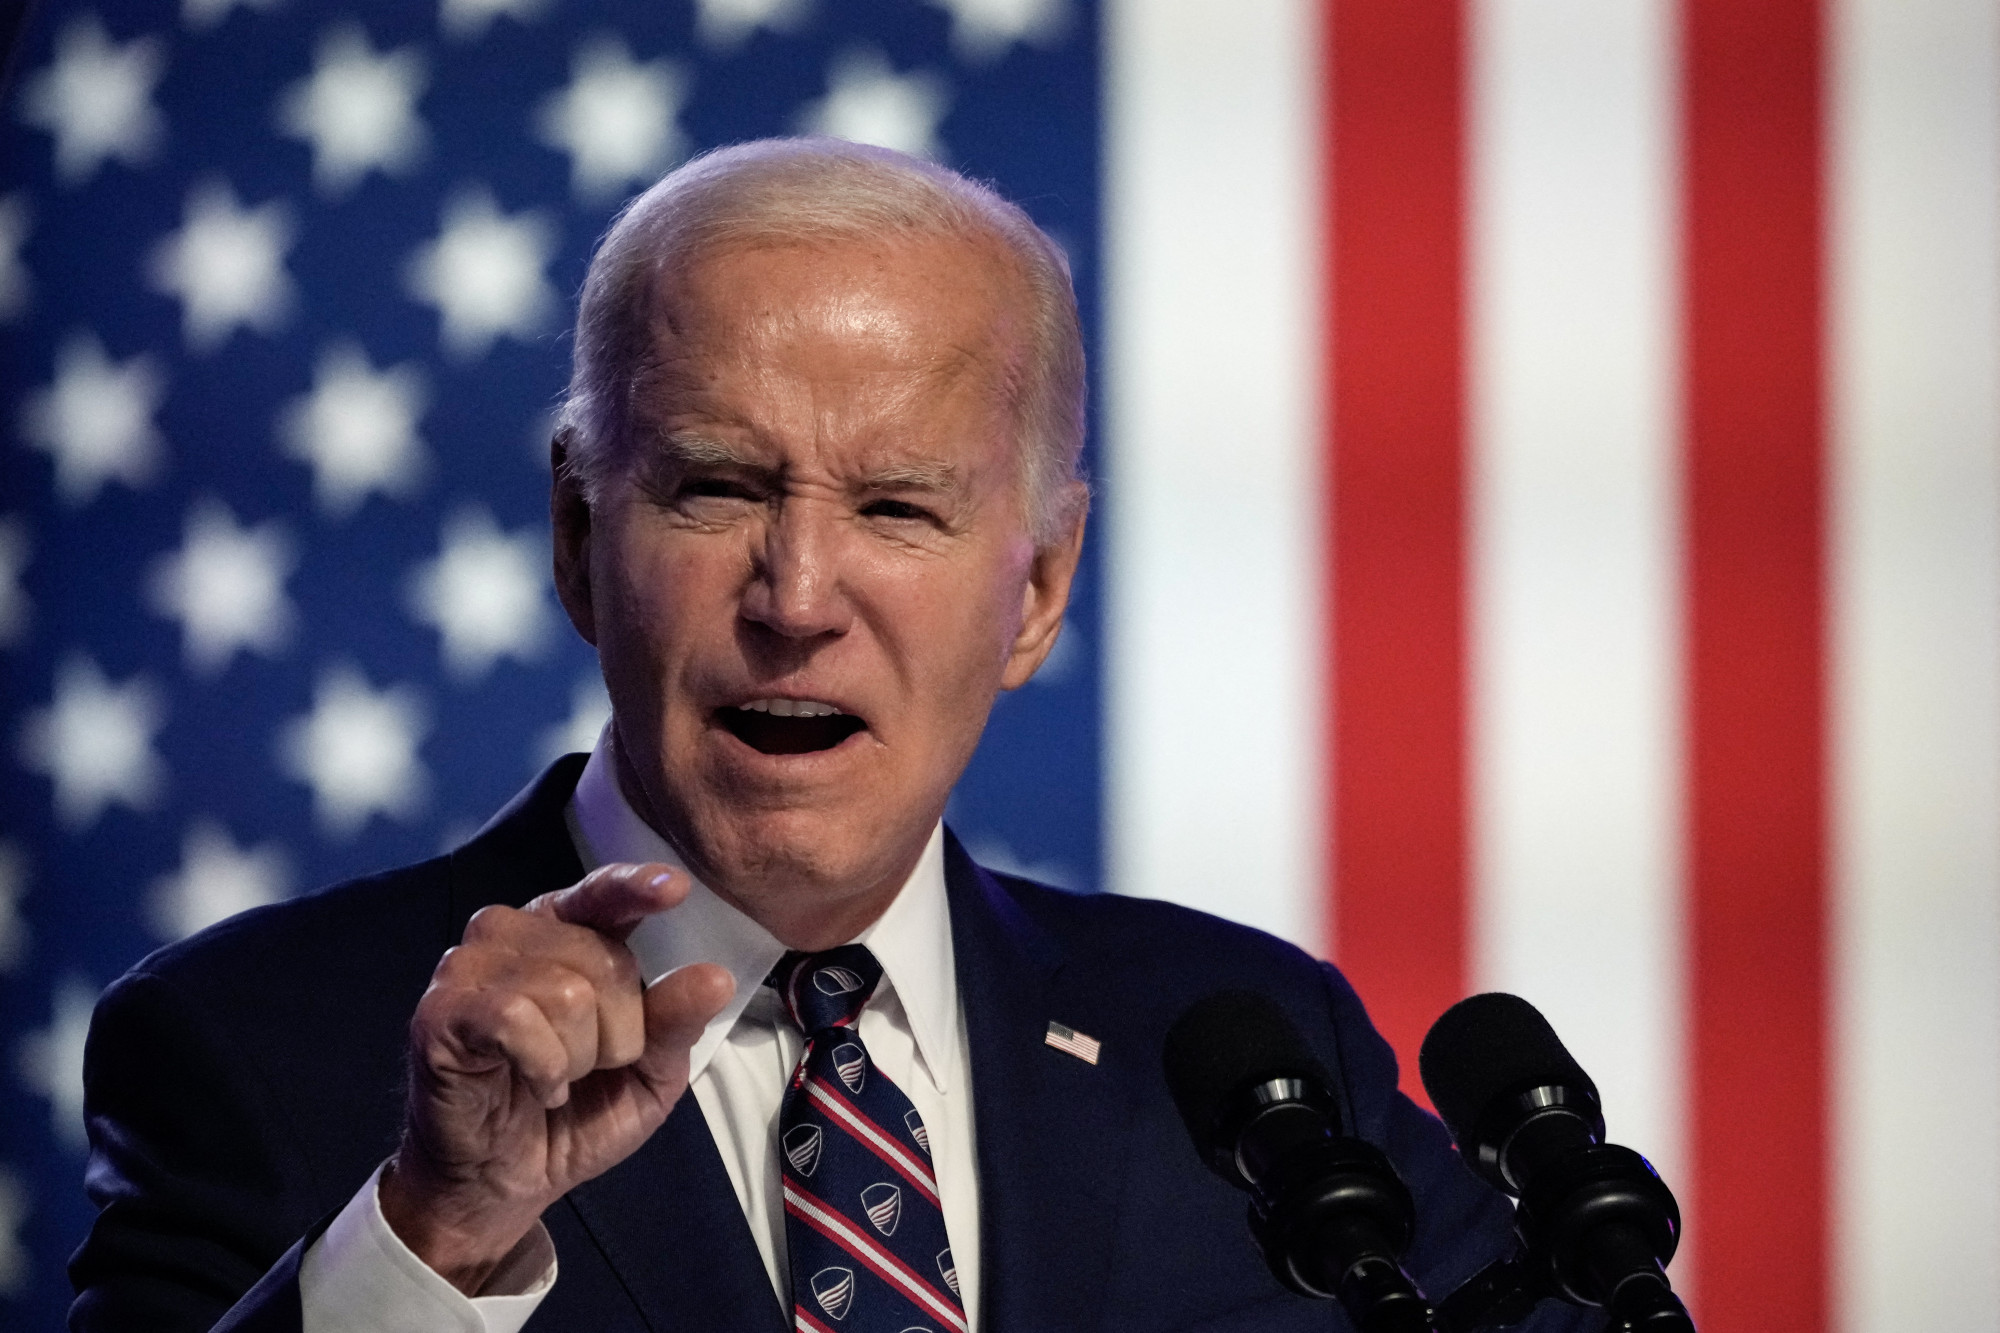 Joe Biden kampánya egy utolsó interjún múlhat